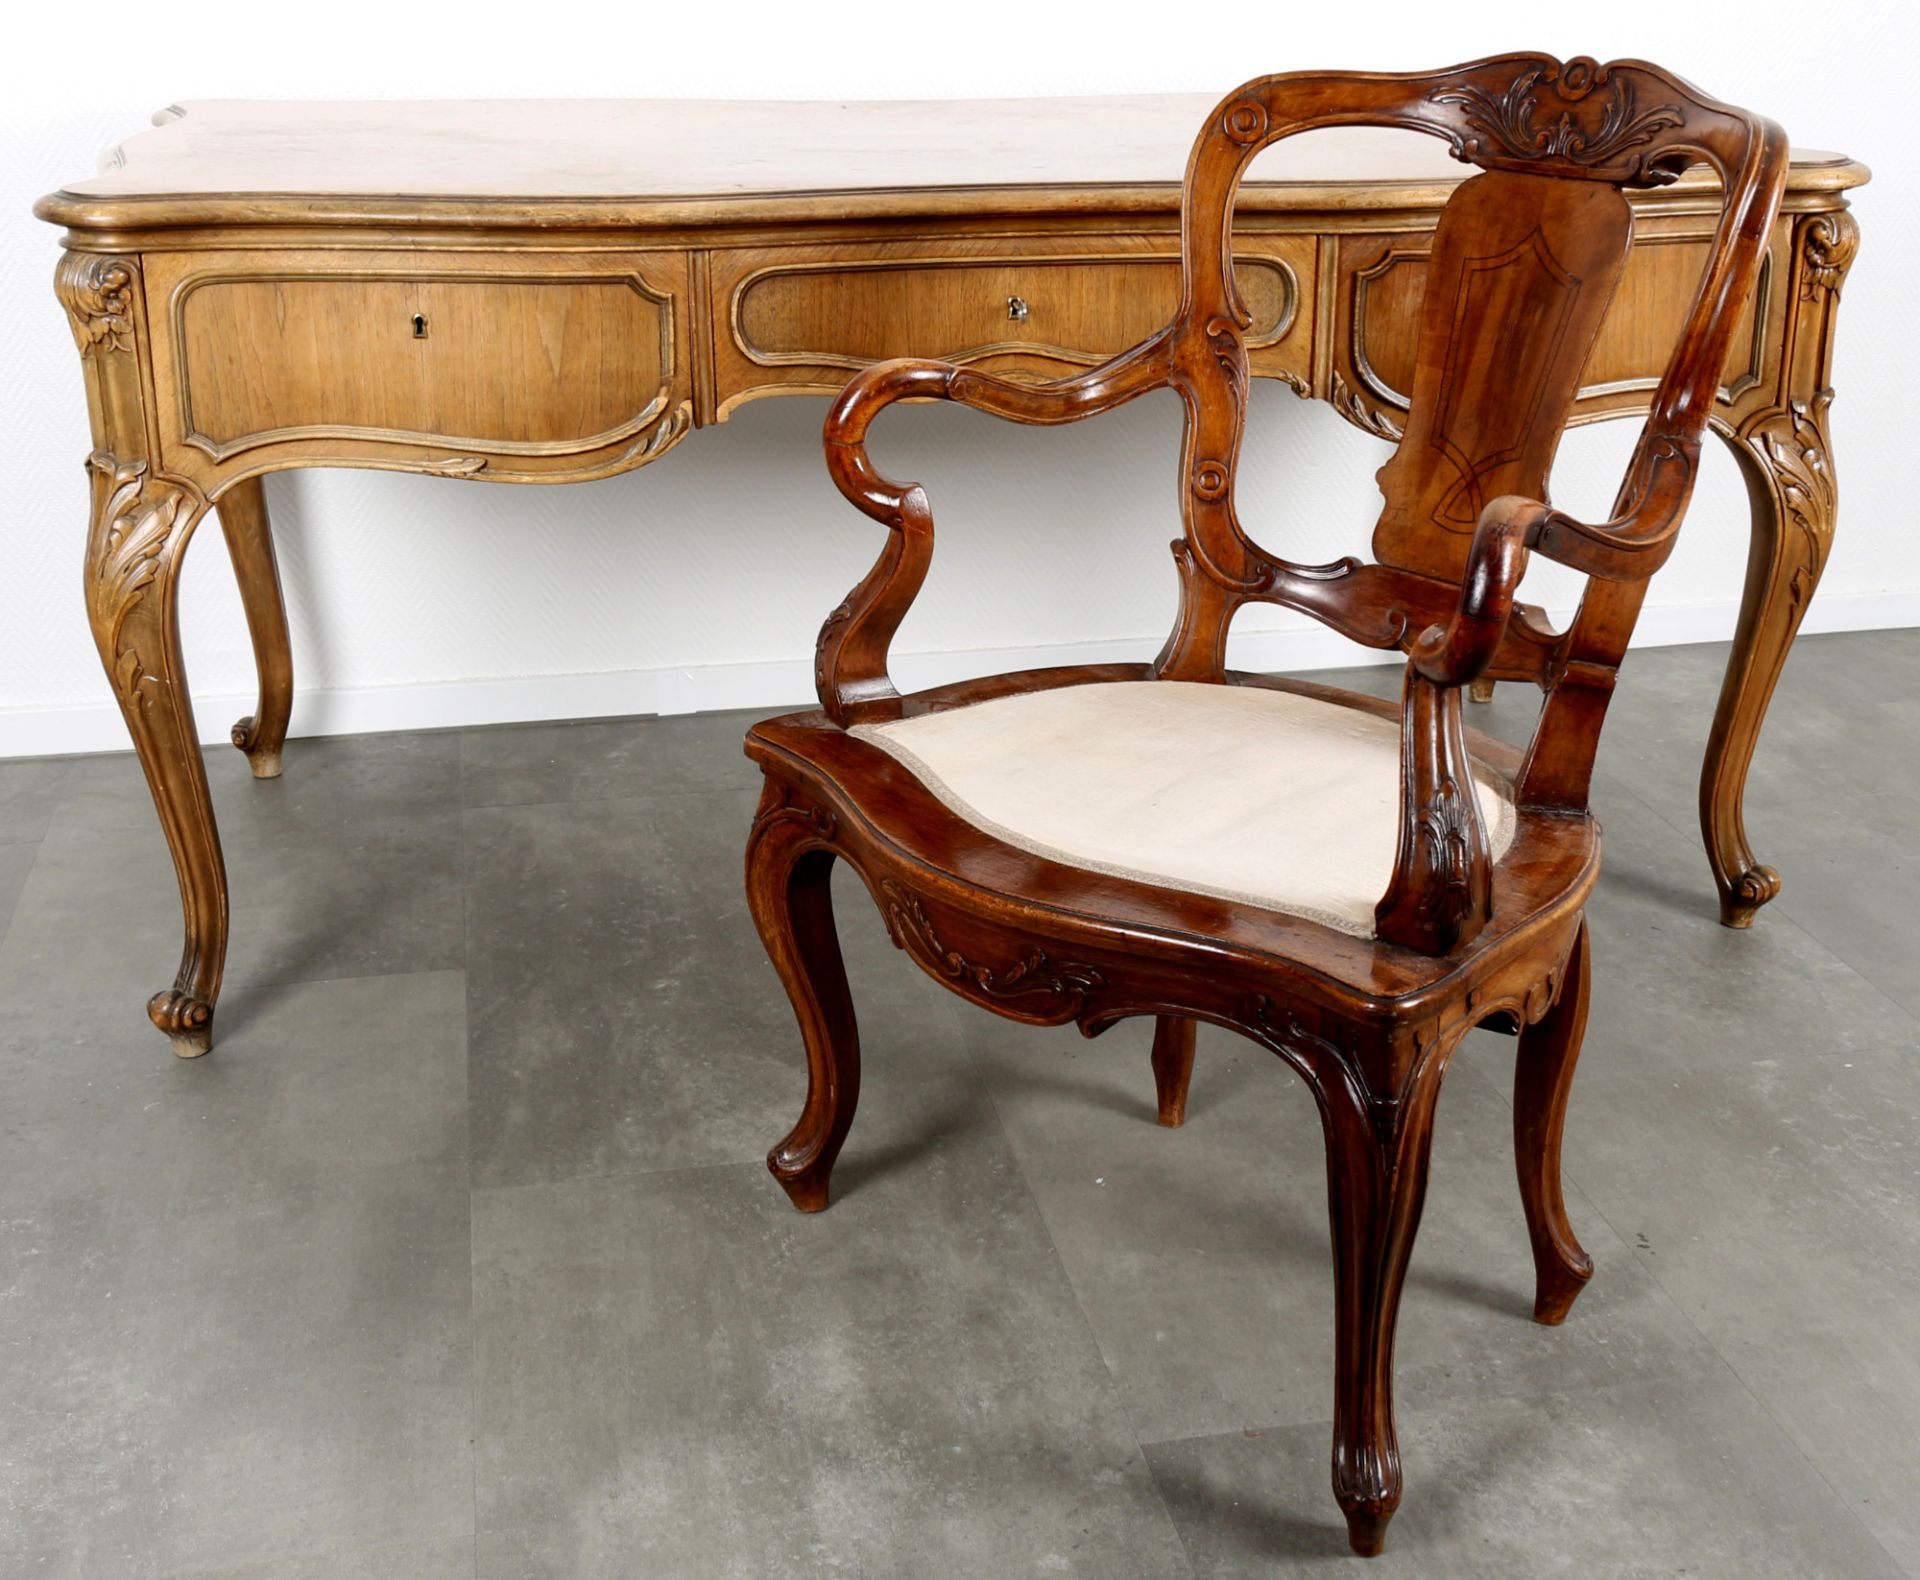 Louis XV Schreibtisch mit Sessel um 1900, desk with armchair around 1900,